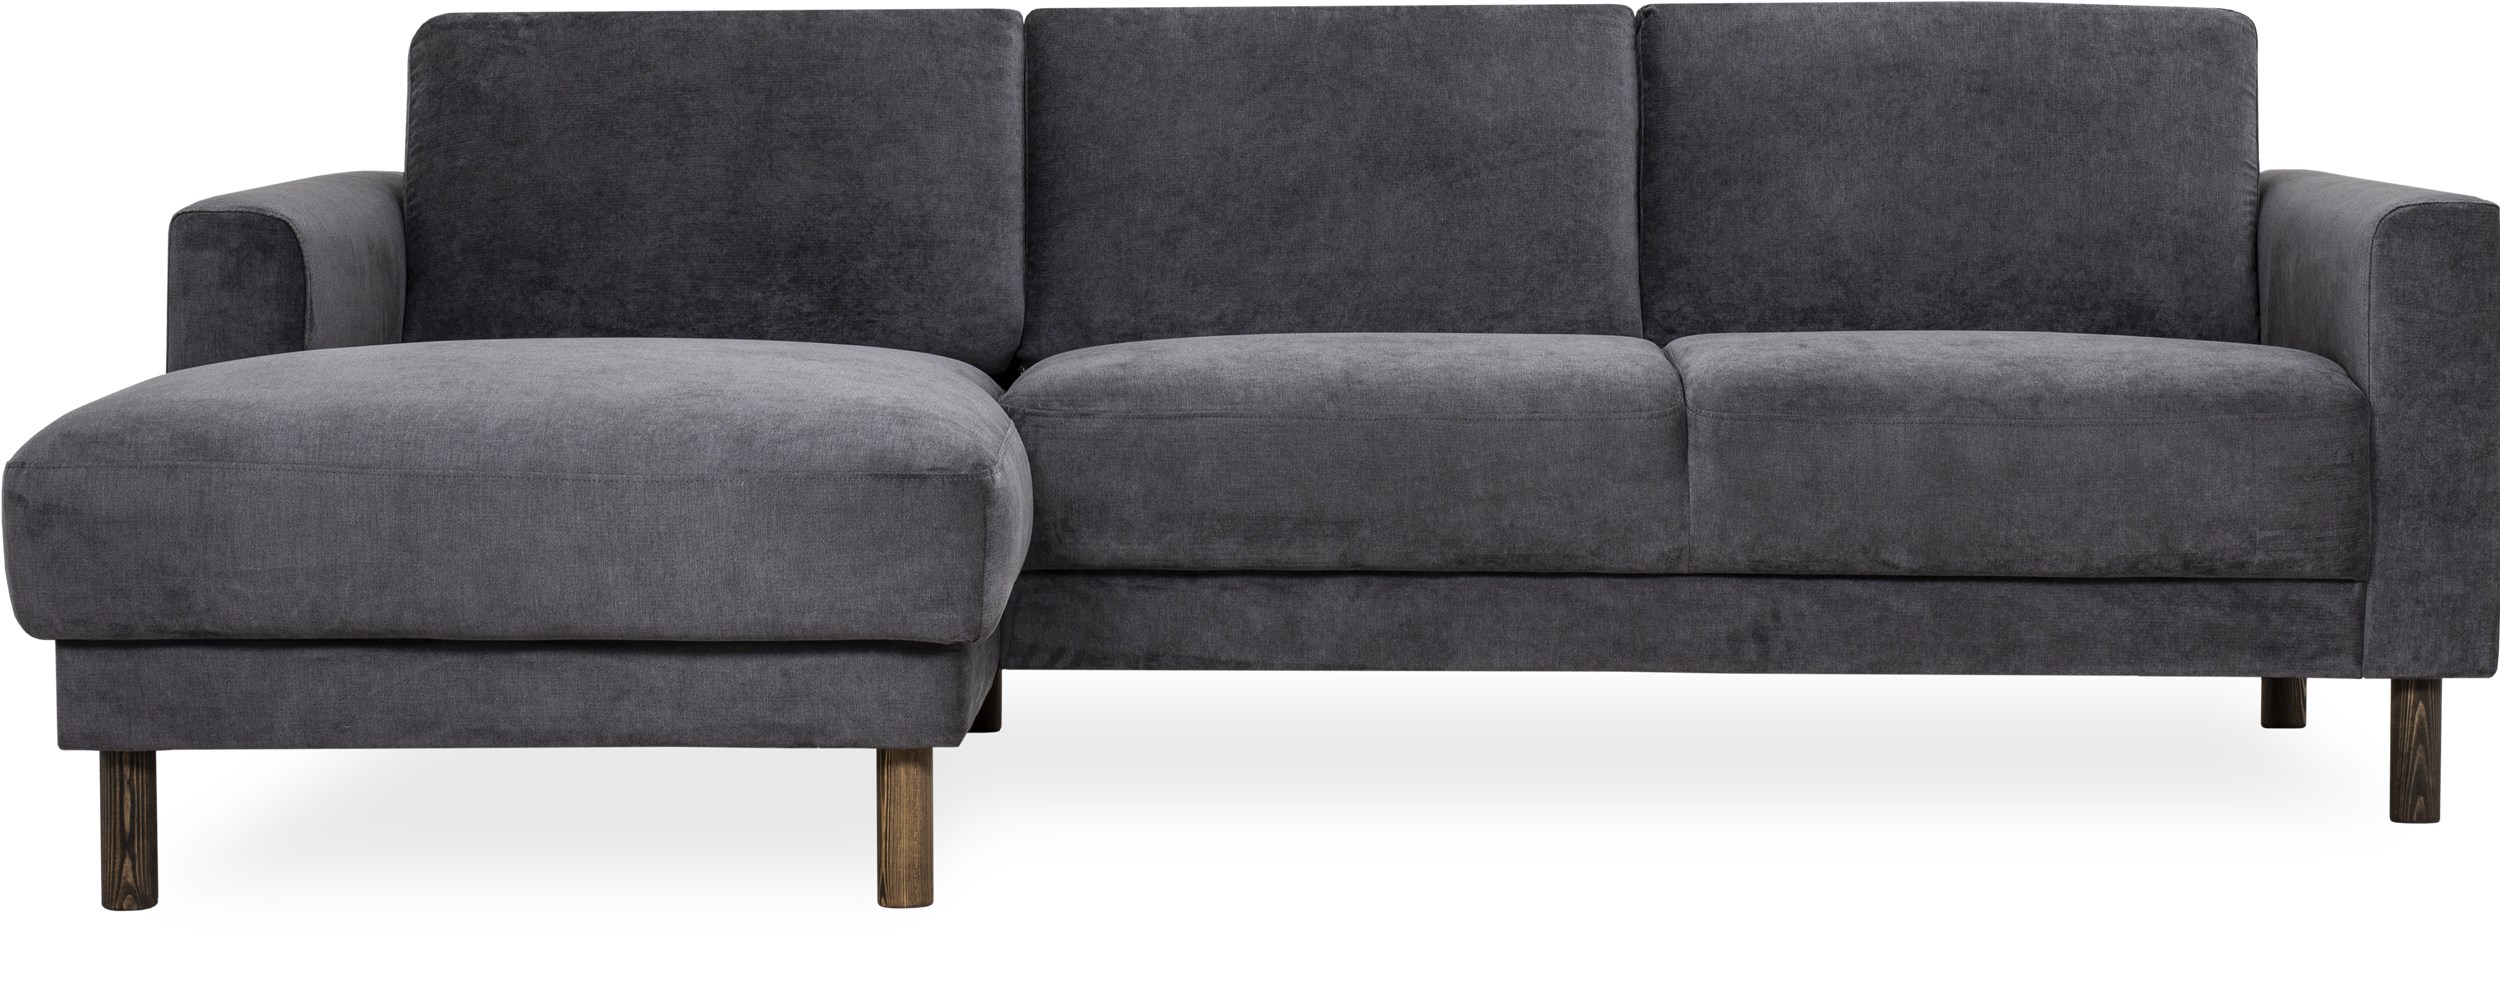 Cleveland Sofa med chaiselong - Soft 451 Antracite stof, Ben i røgfarvet fyrretræ og sæde i polyetherskum, ryg i polyetherskum